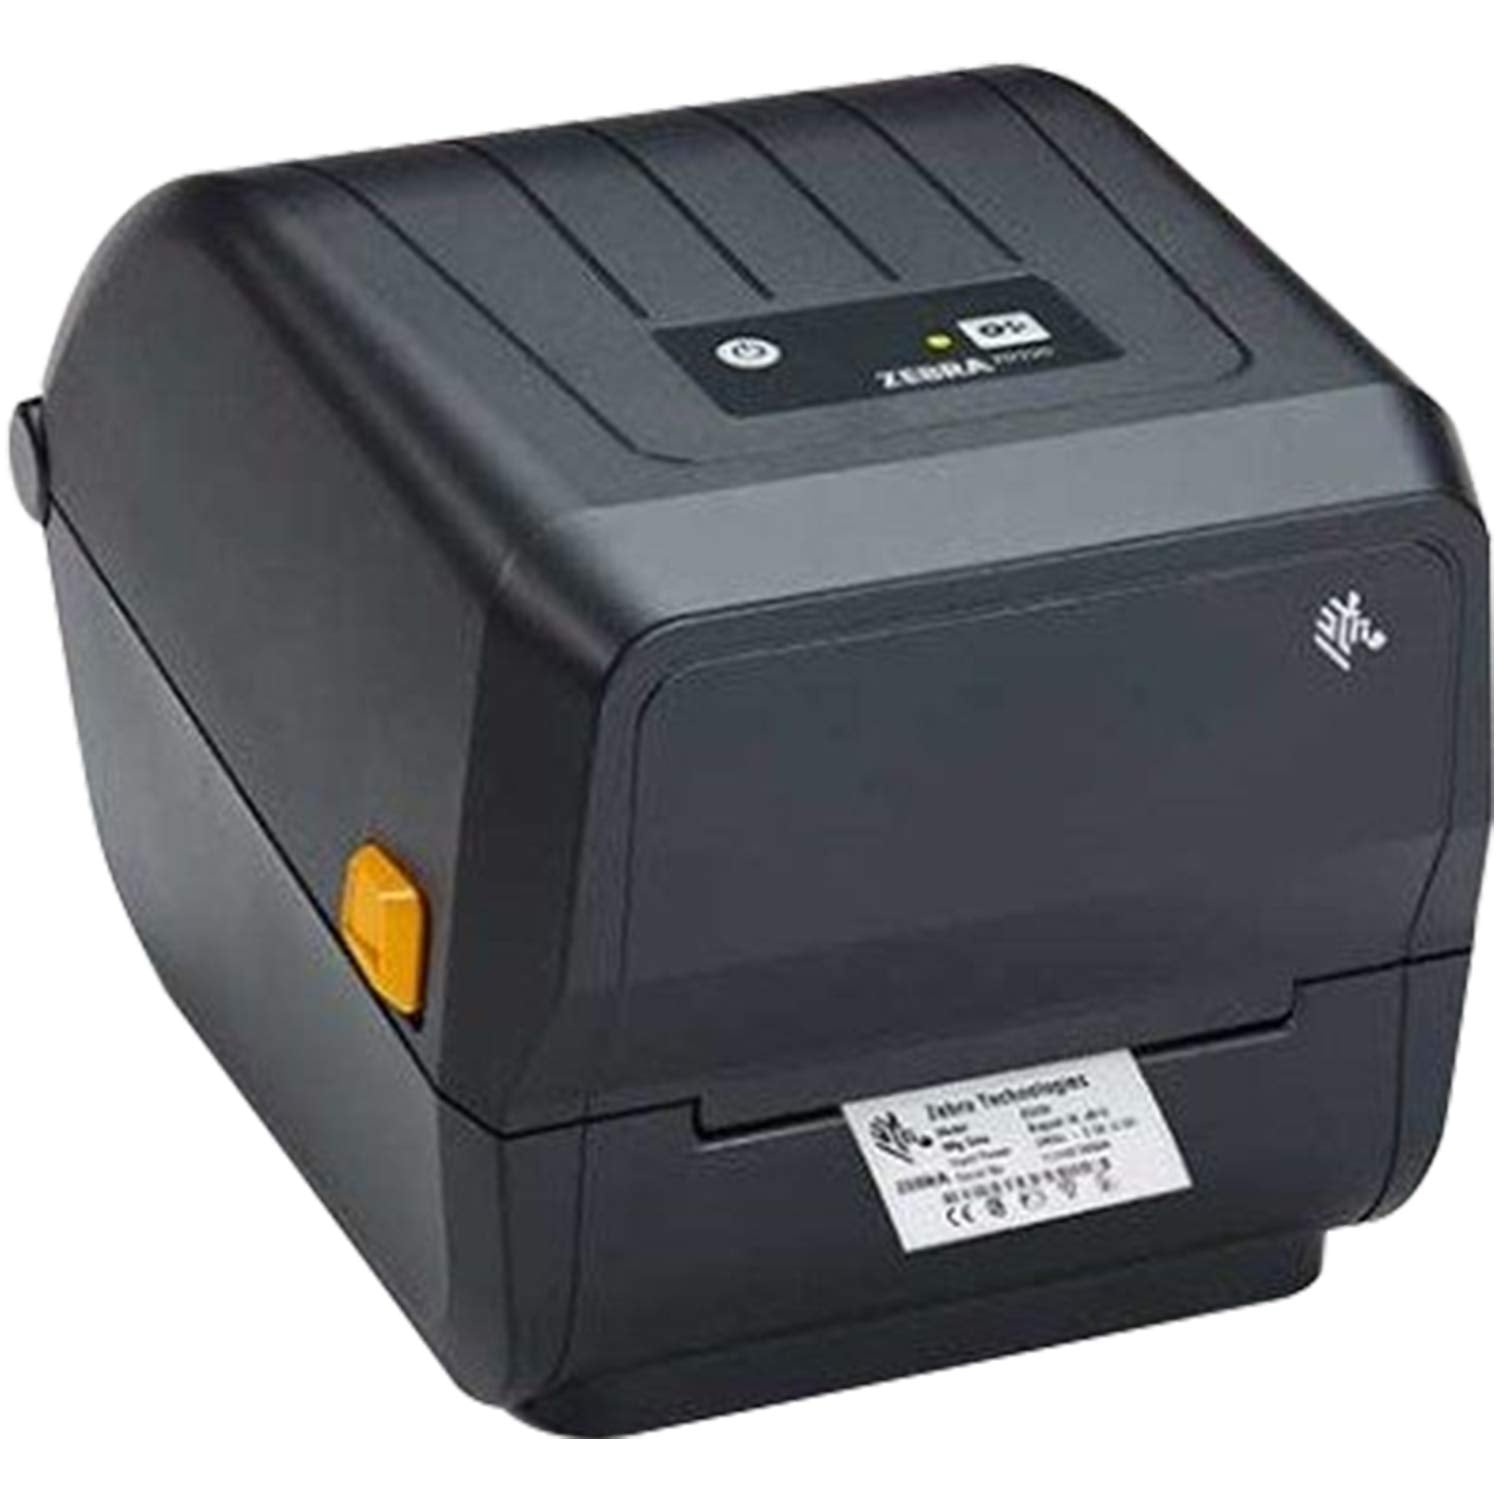 Zebra ZD230t Thermal Transfer Desktop Printer